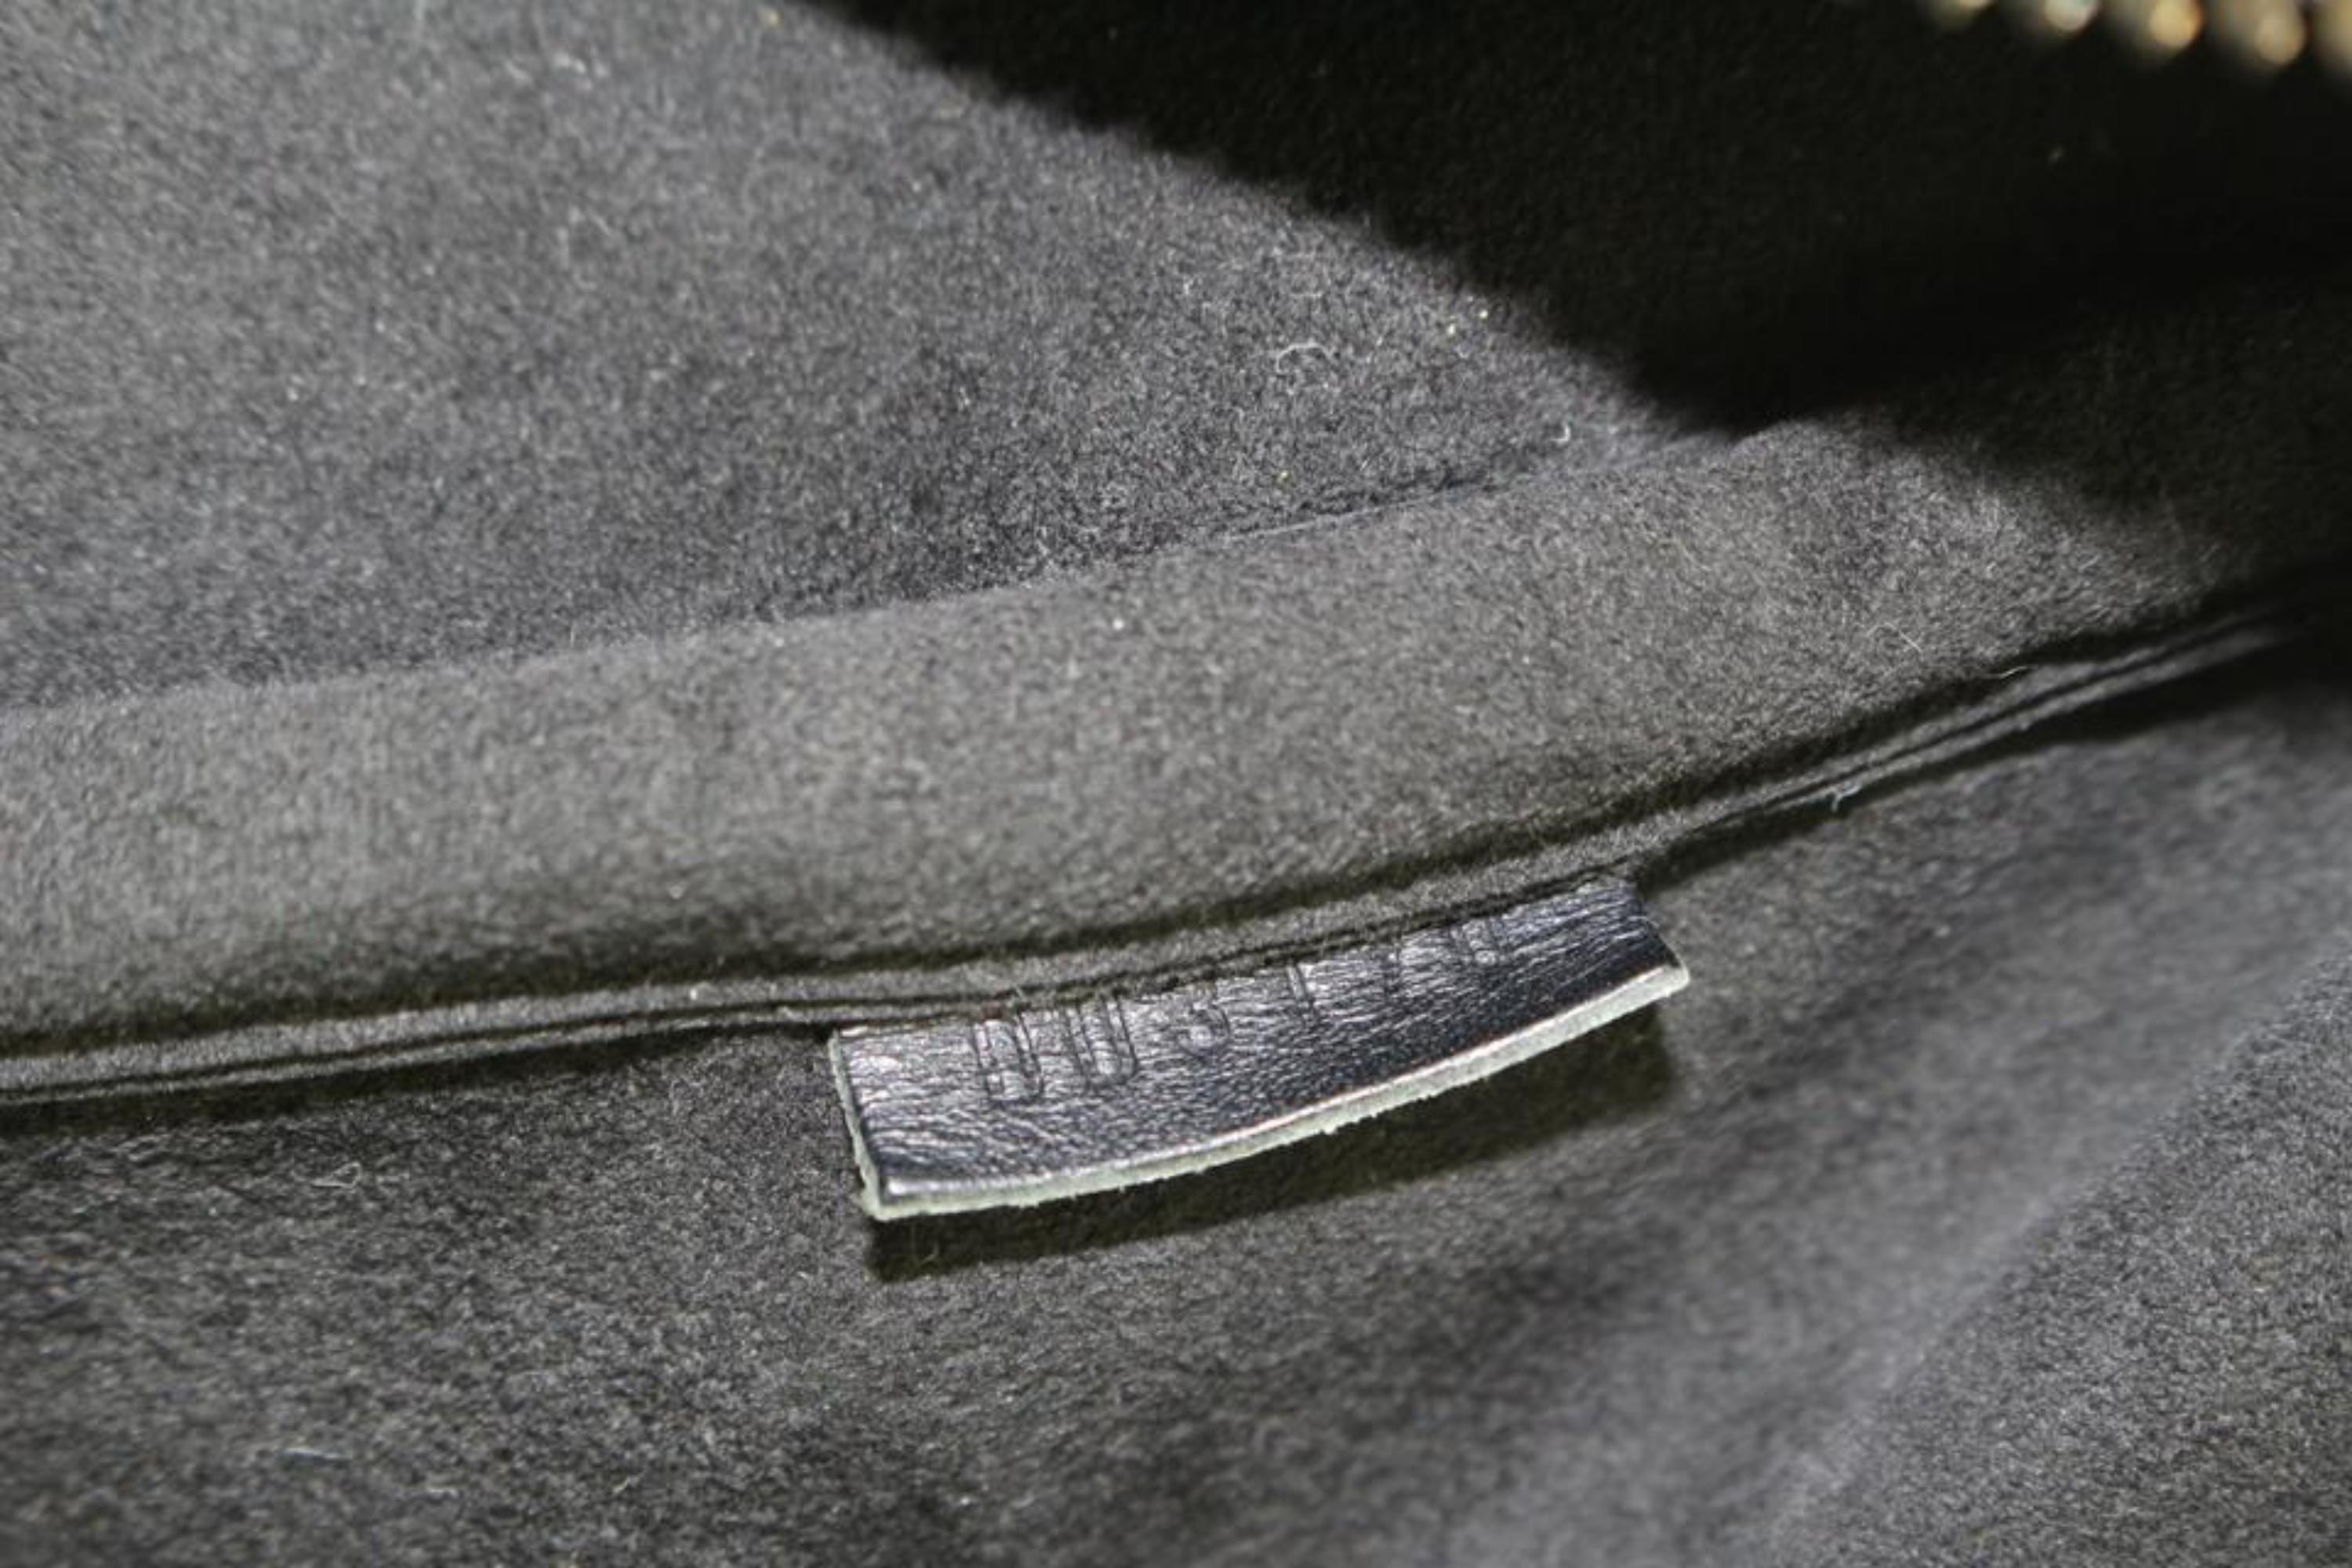 Louis Vuitton Black Carbon Fiber Damier Carbone Keepall 45 Duffle Bag 1122lv14 4